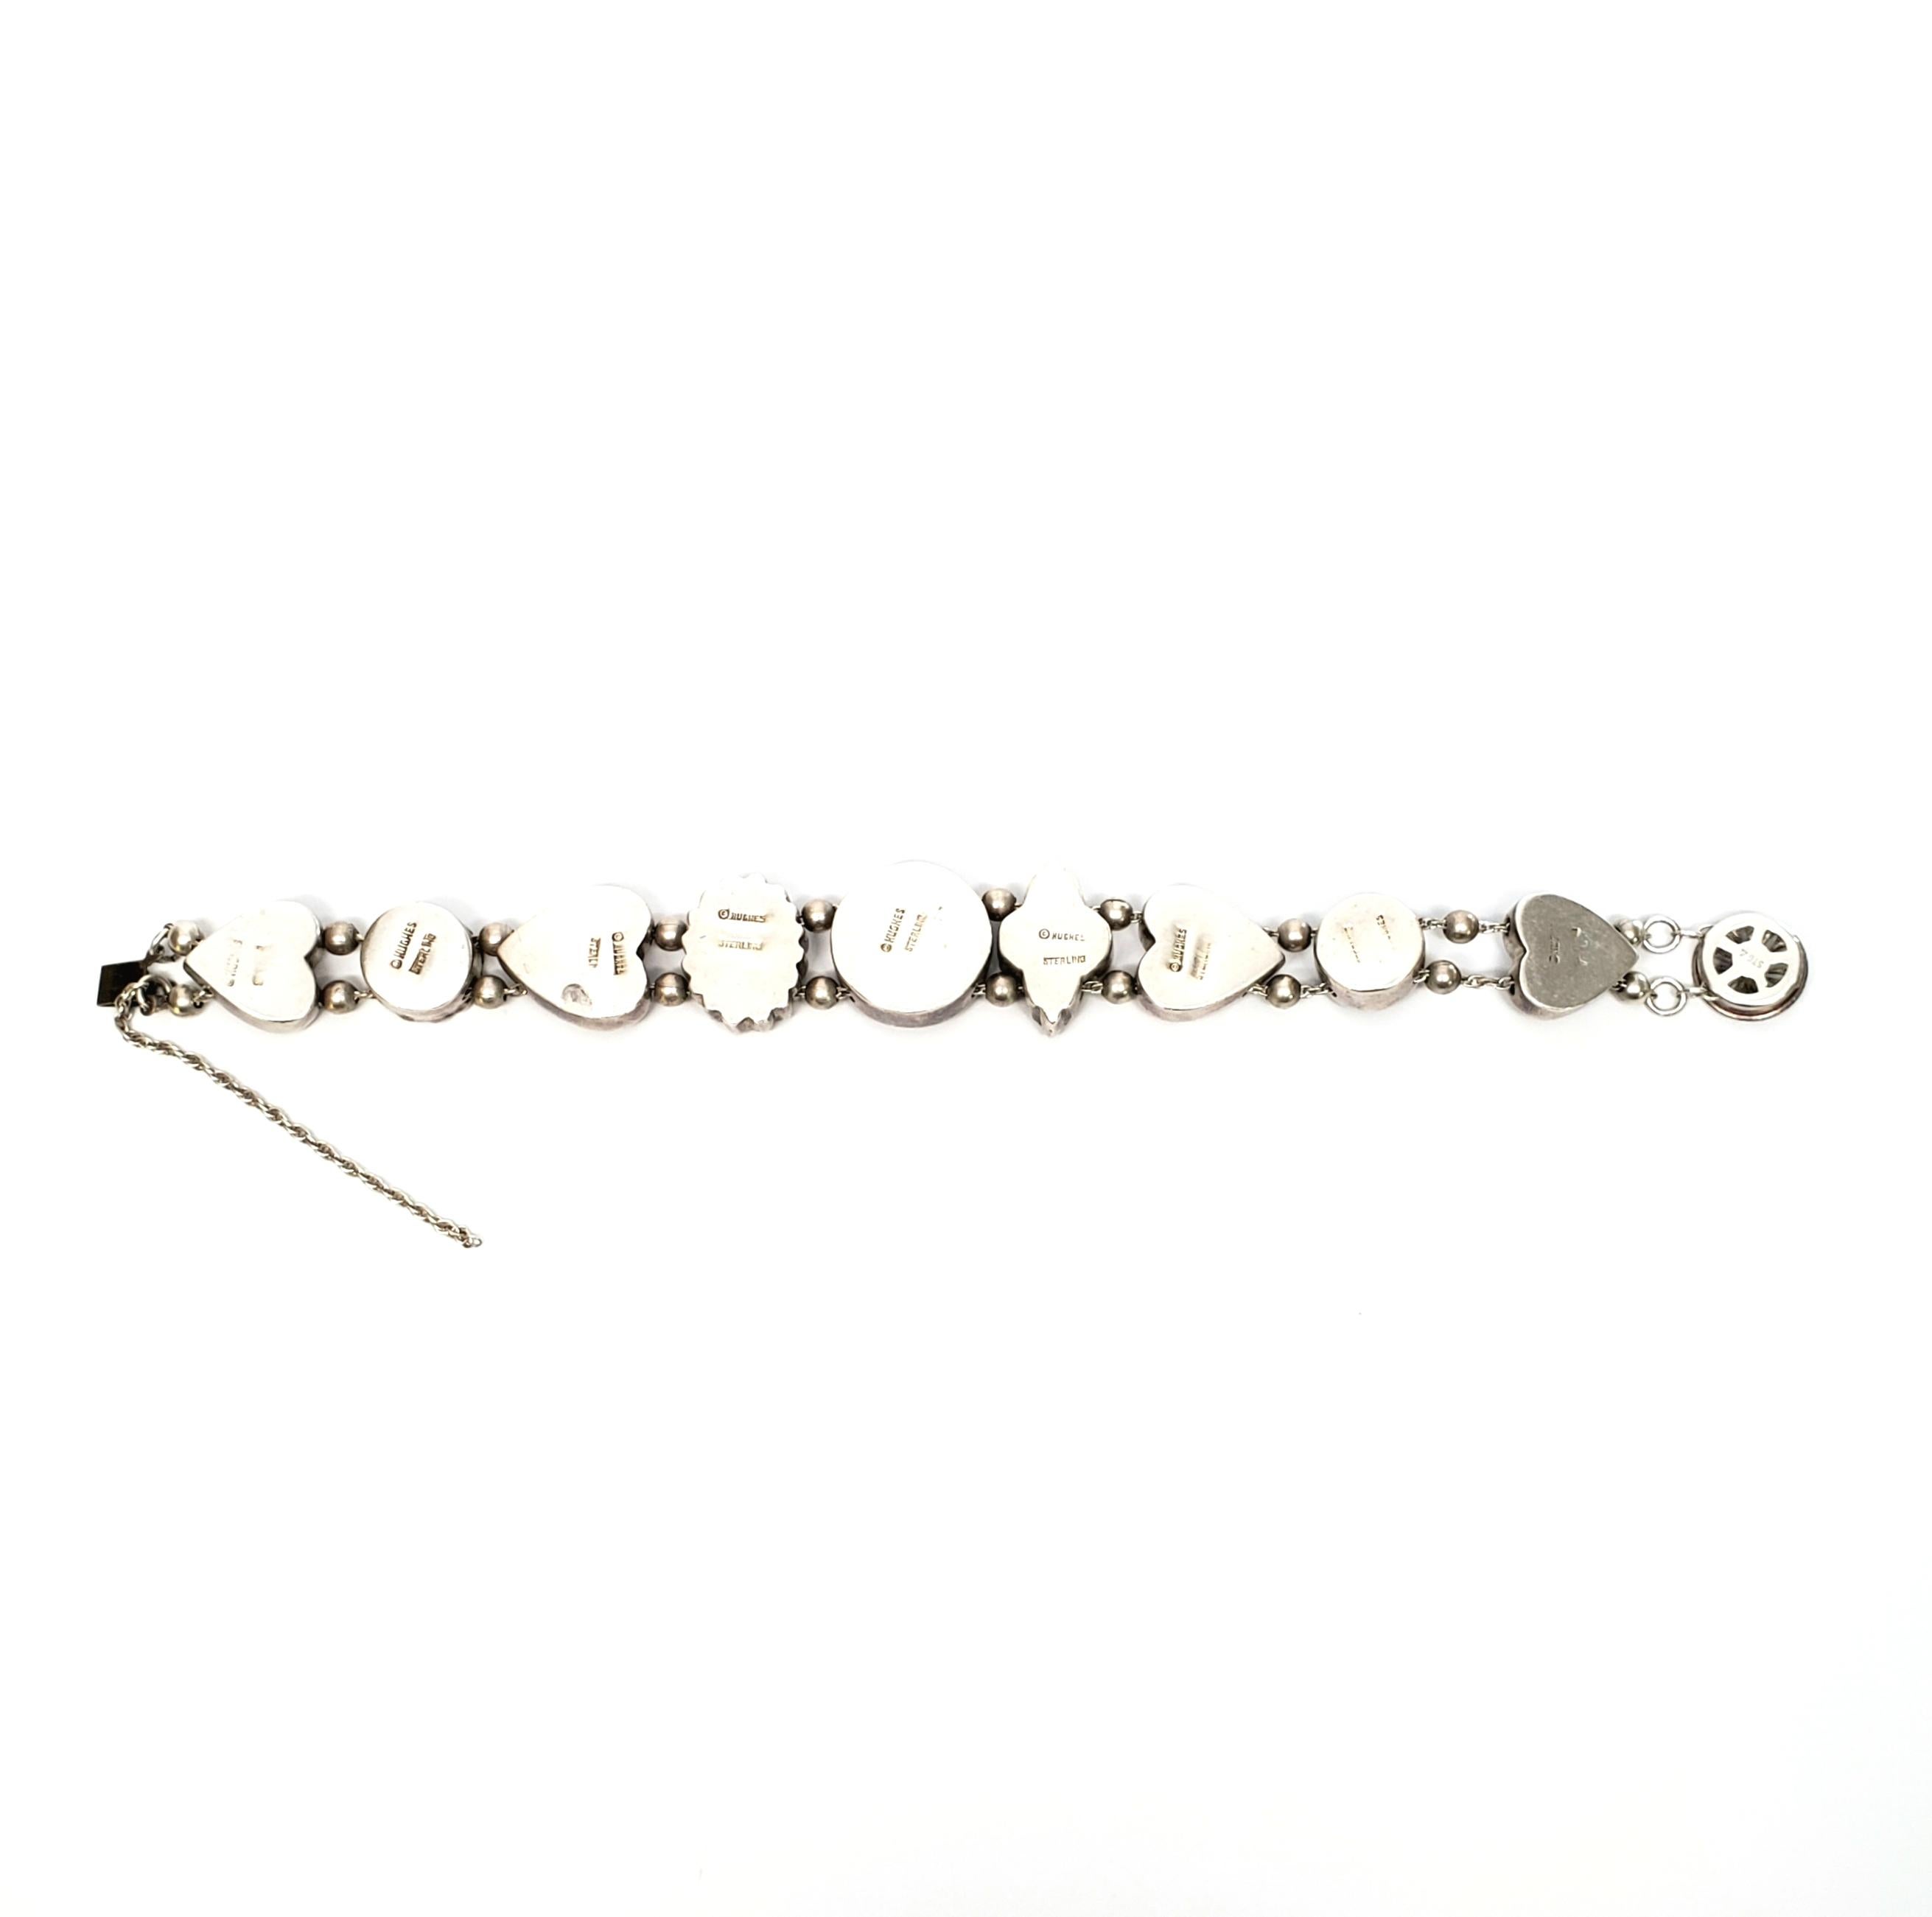 Vintage sterling silver slide charm bracelet by designer Hughes.

The 